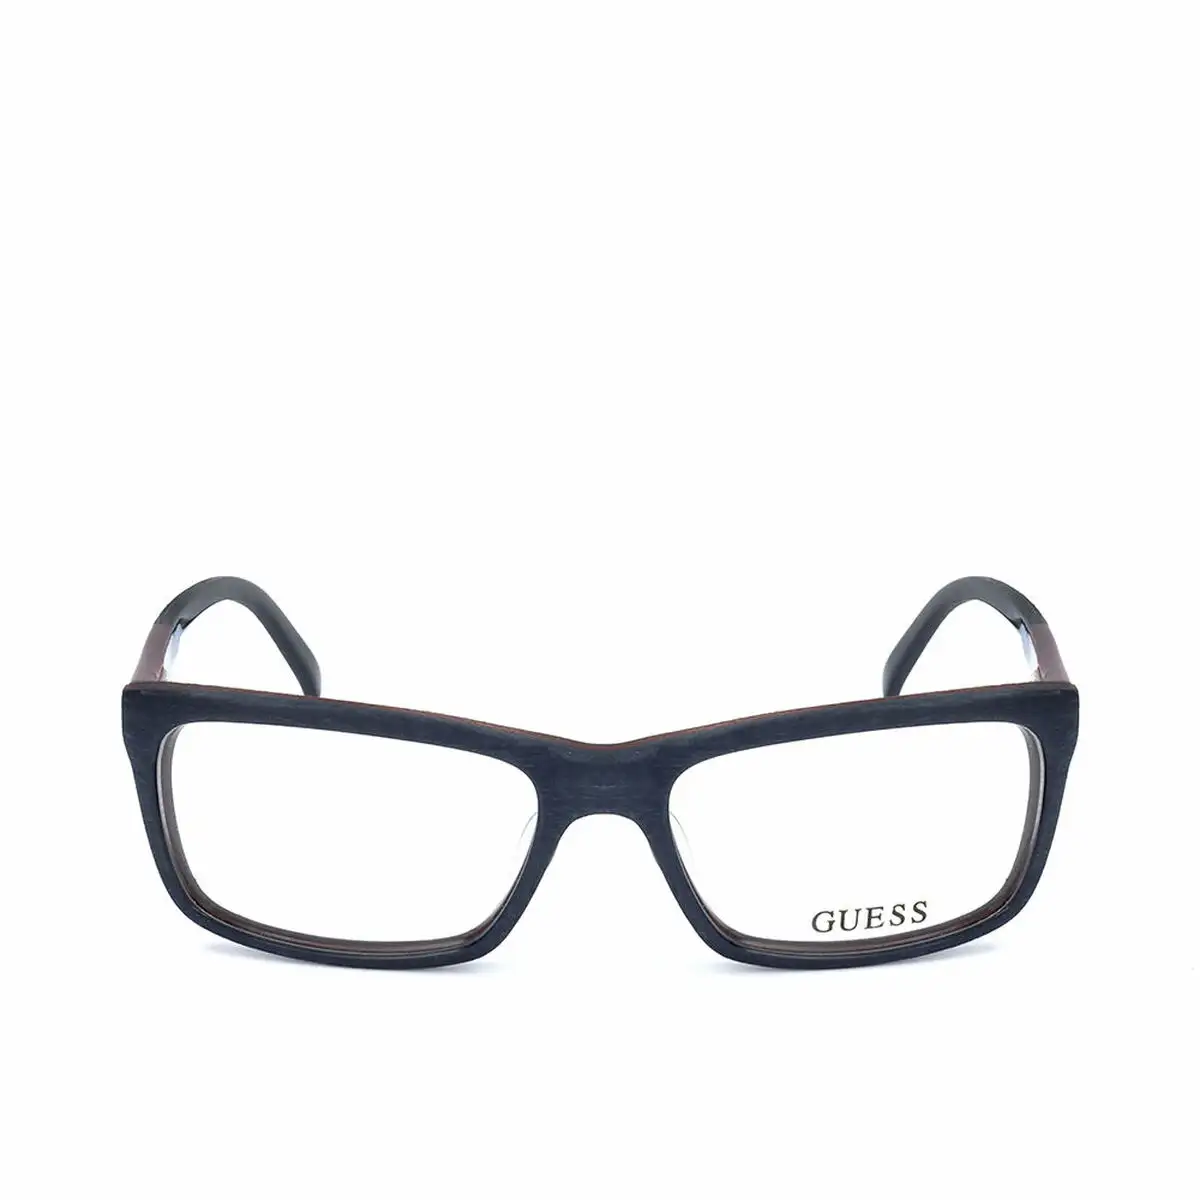 Monture de lunettes guess gu1845a m26 o 54 mm_8784. Entrez dans DIAYTAR SENEGAL - Où Chaque Détail Compte. Explorez notre boutique en ligne pour trouver des produits de haute qualité, soigneusement choisis pour répondre à vos besoins et vos désirs.